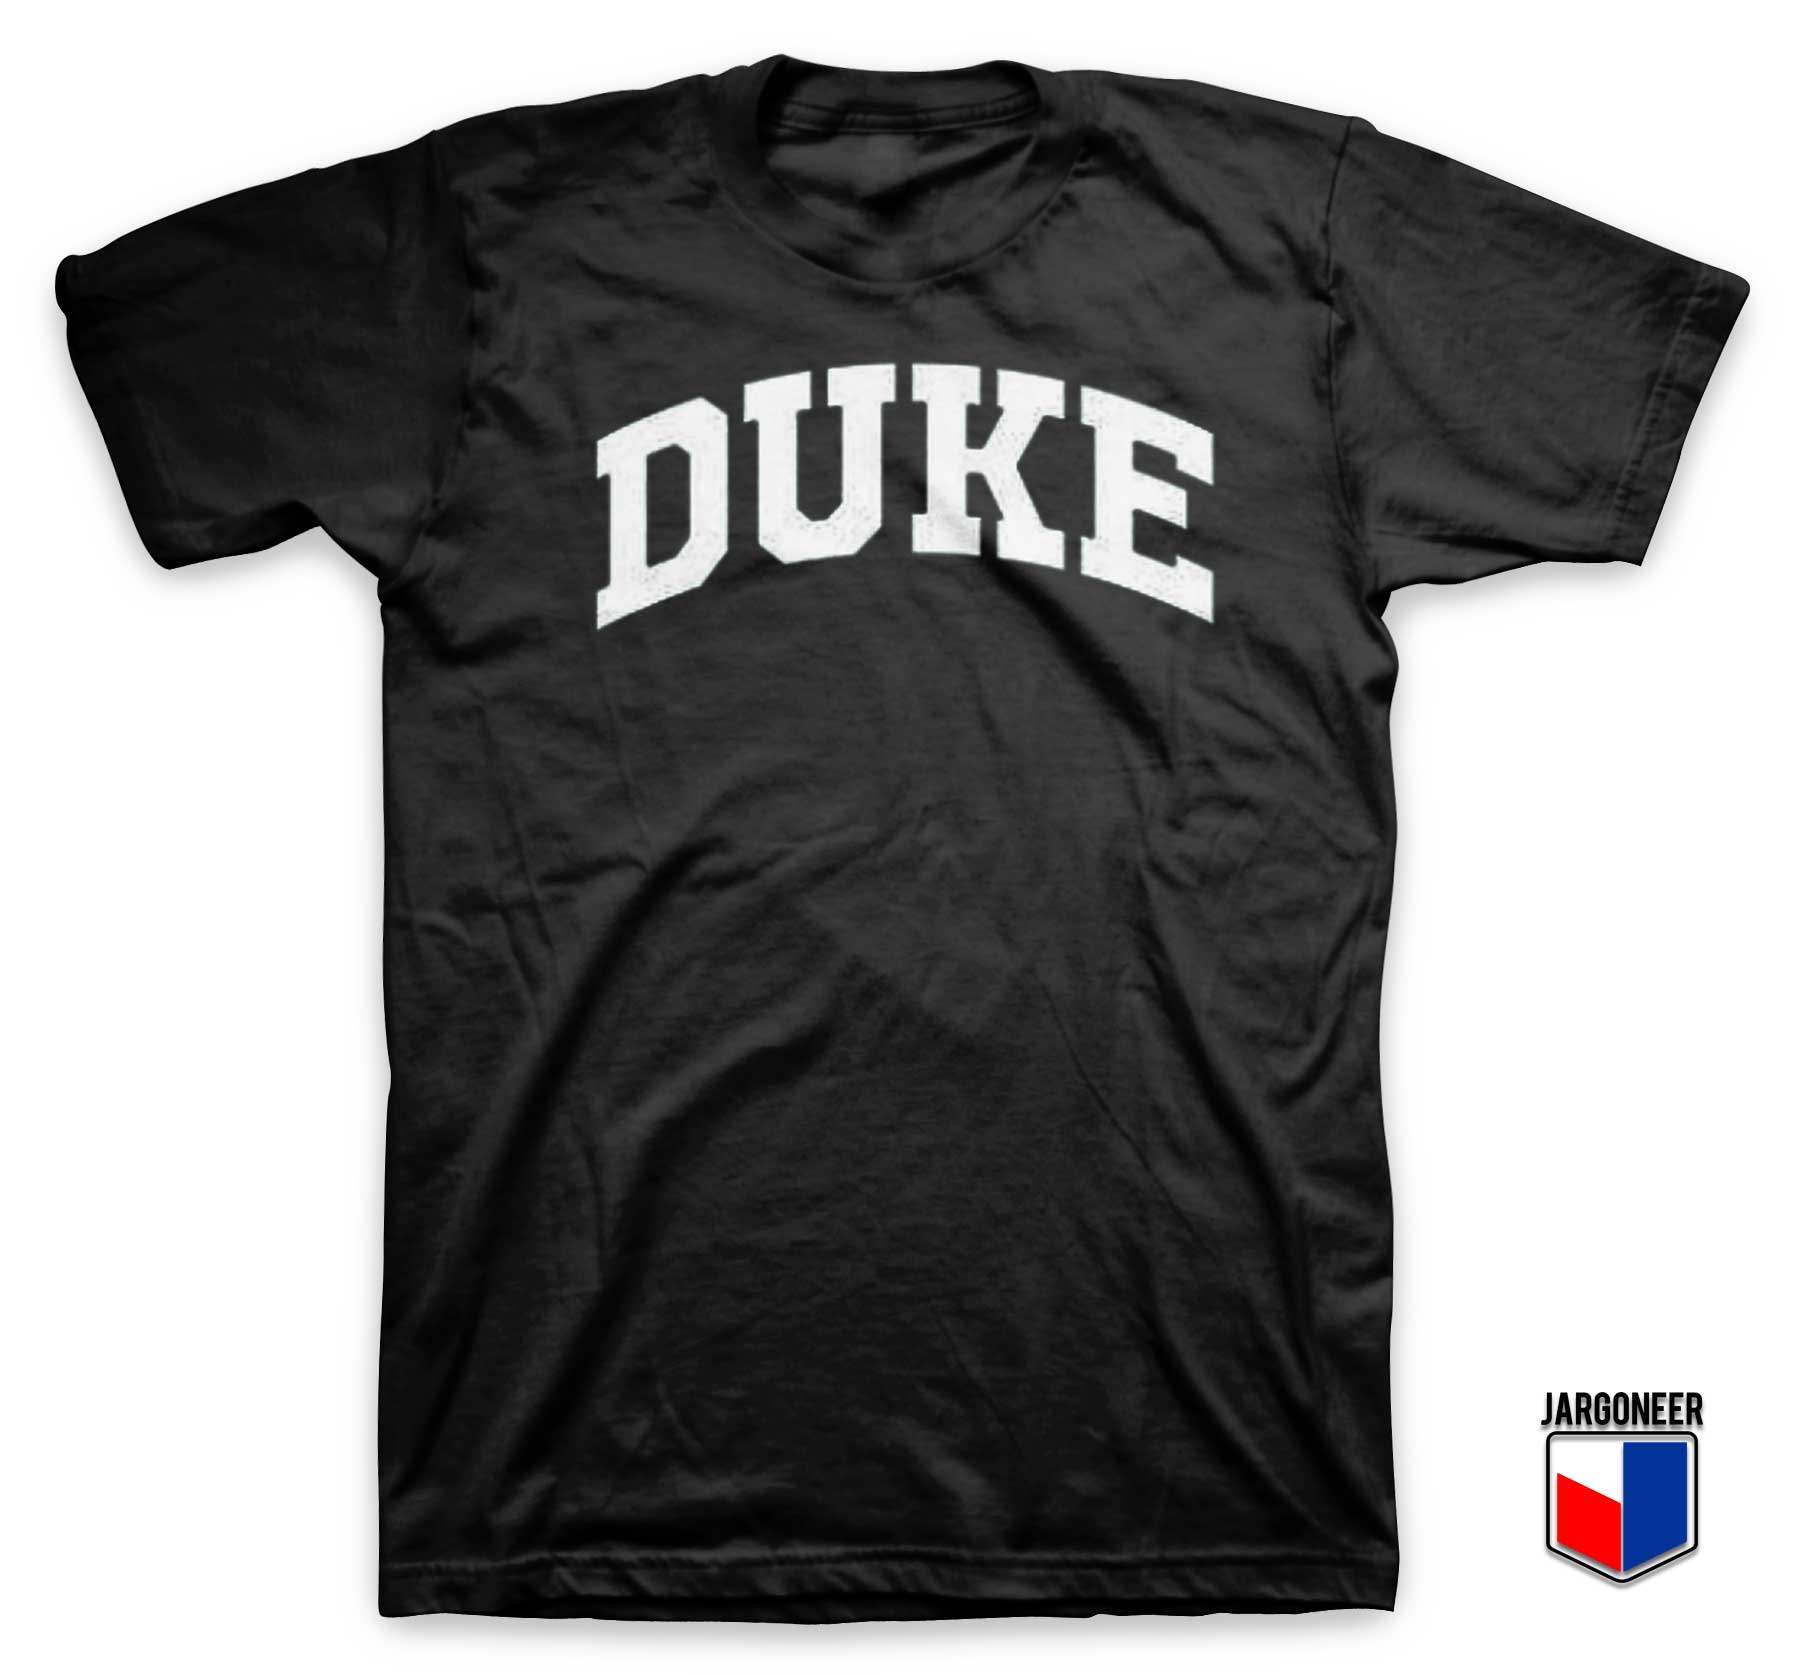 Duke University T Shirt - Shop Unique Graphic Cool Shirt Designs